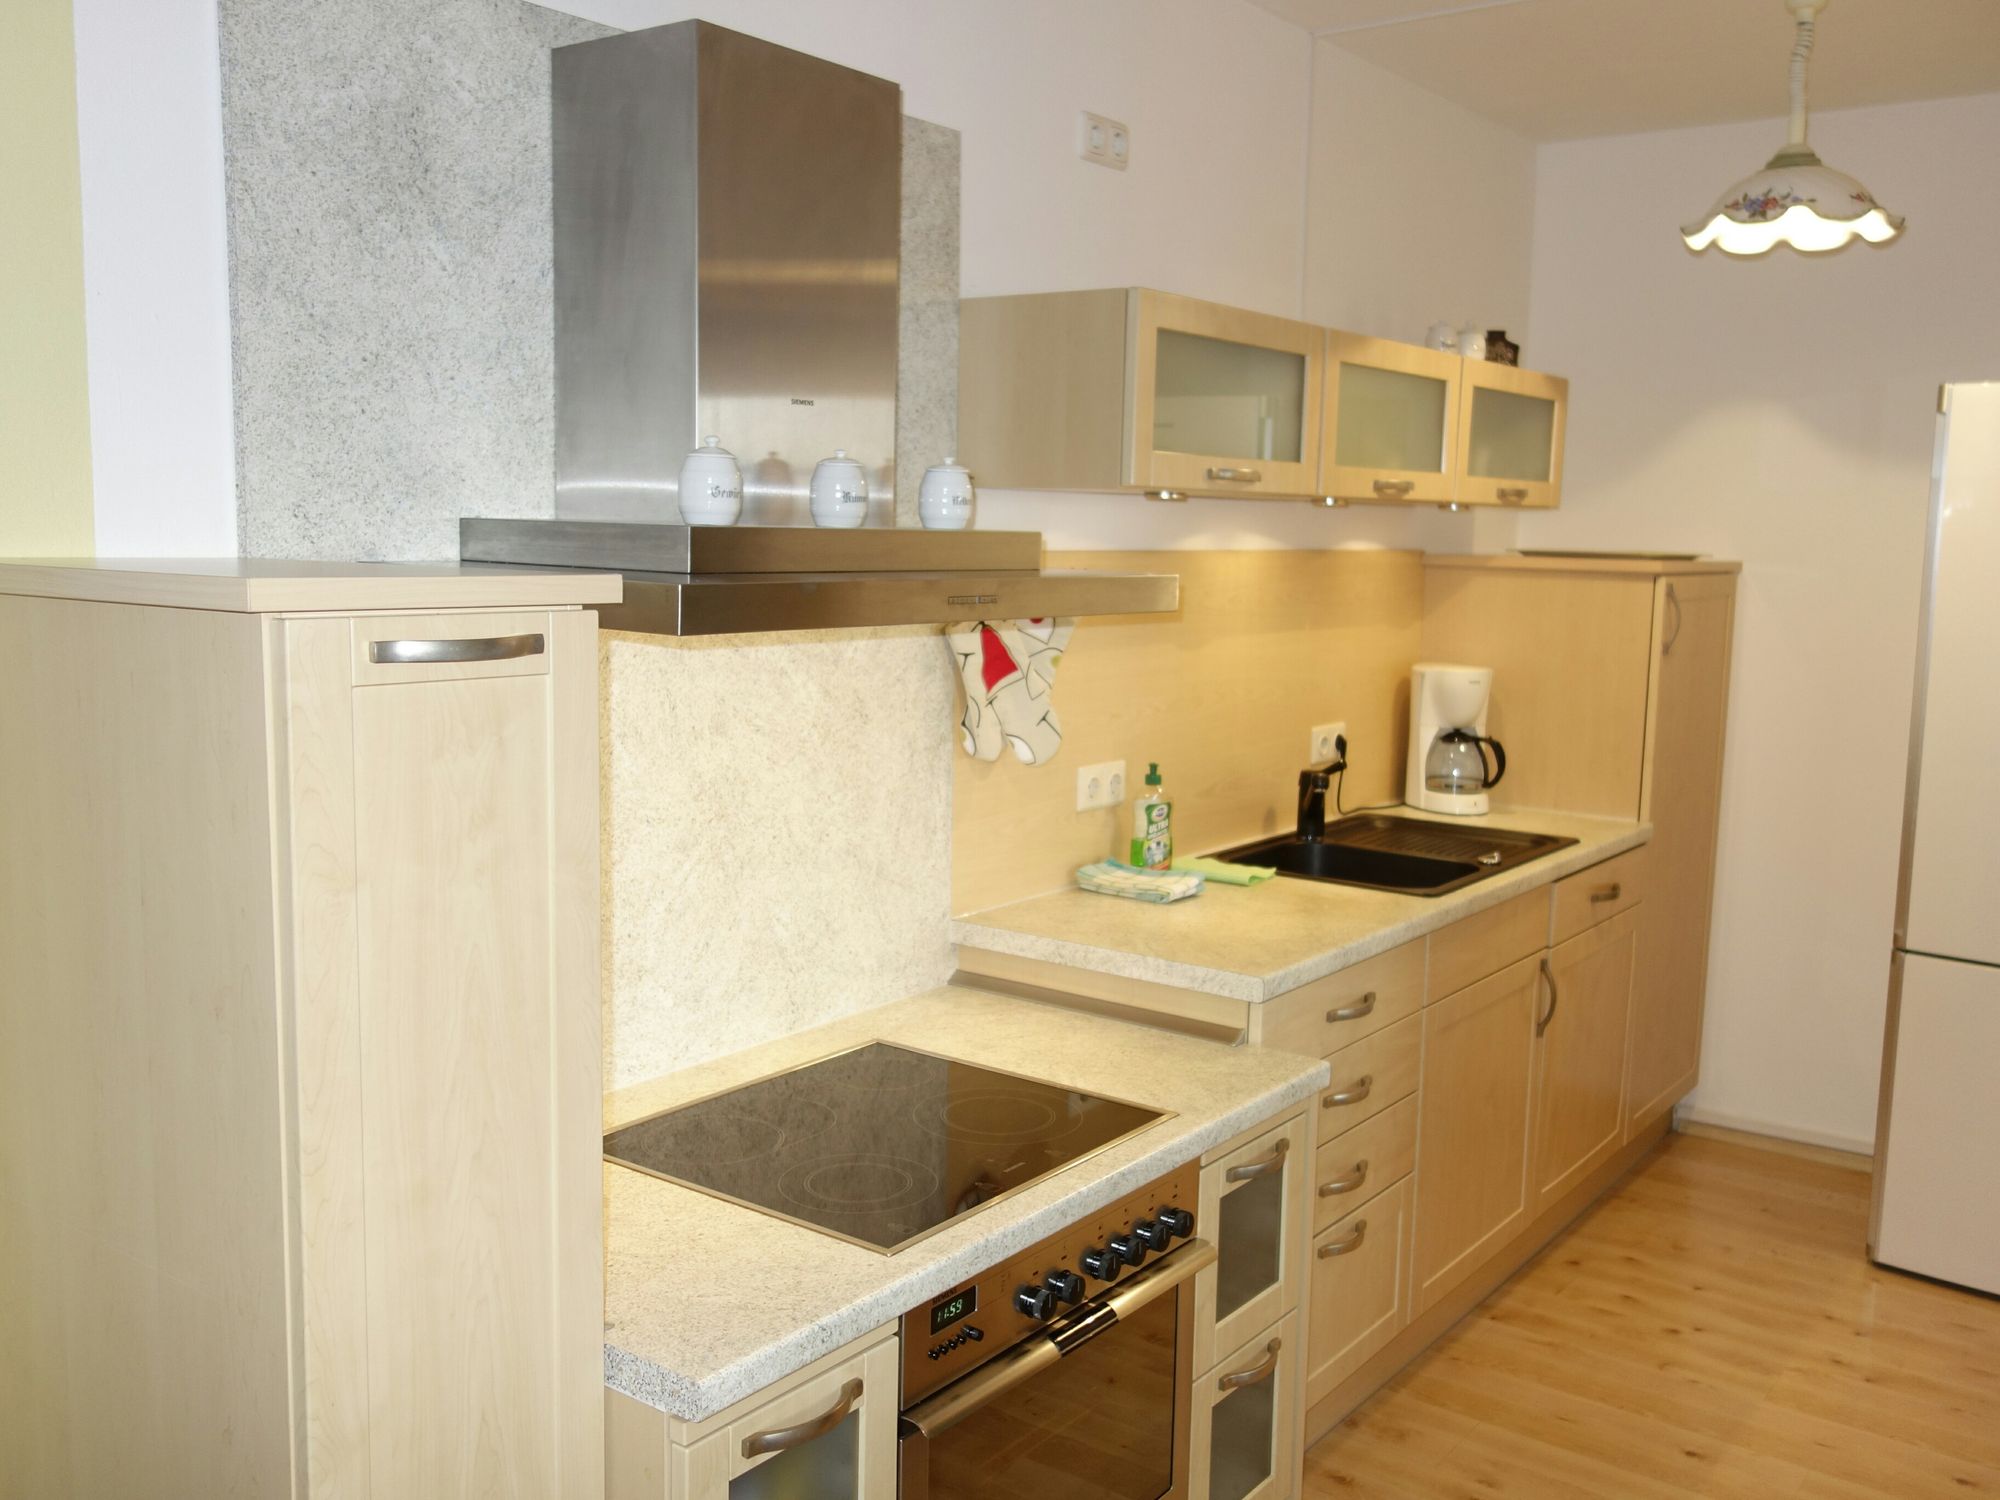 Voll ausgestattete Küche mit großem Kühlschrank.<br>(Bild: Fam. Elmrich)